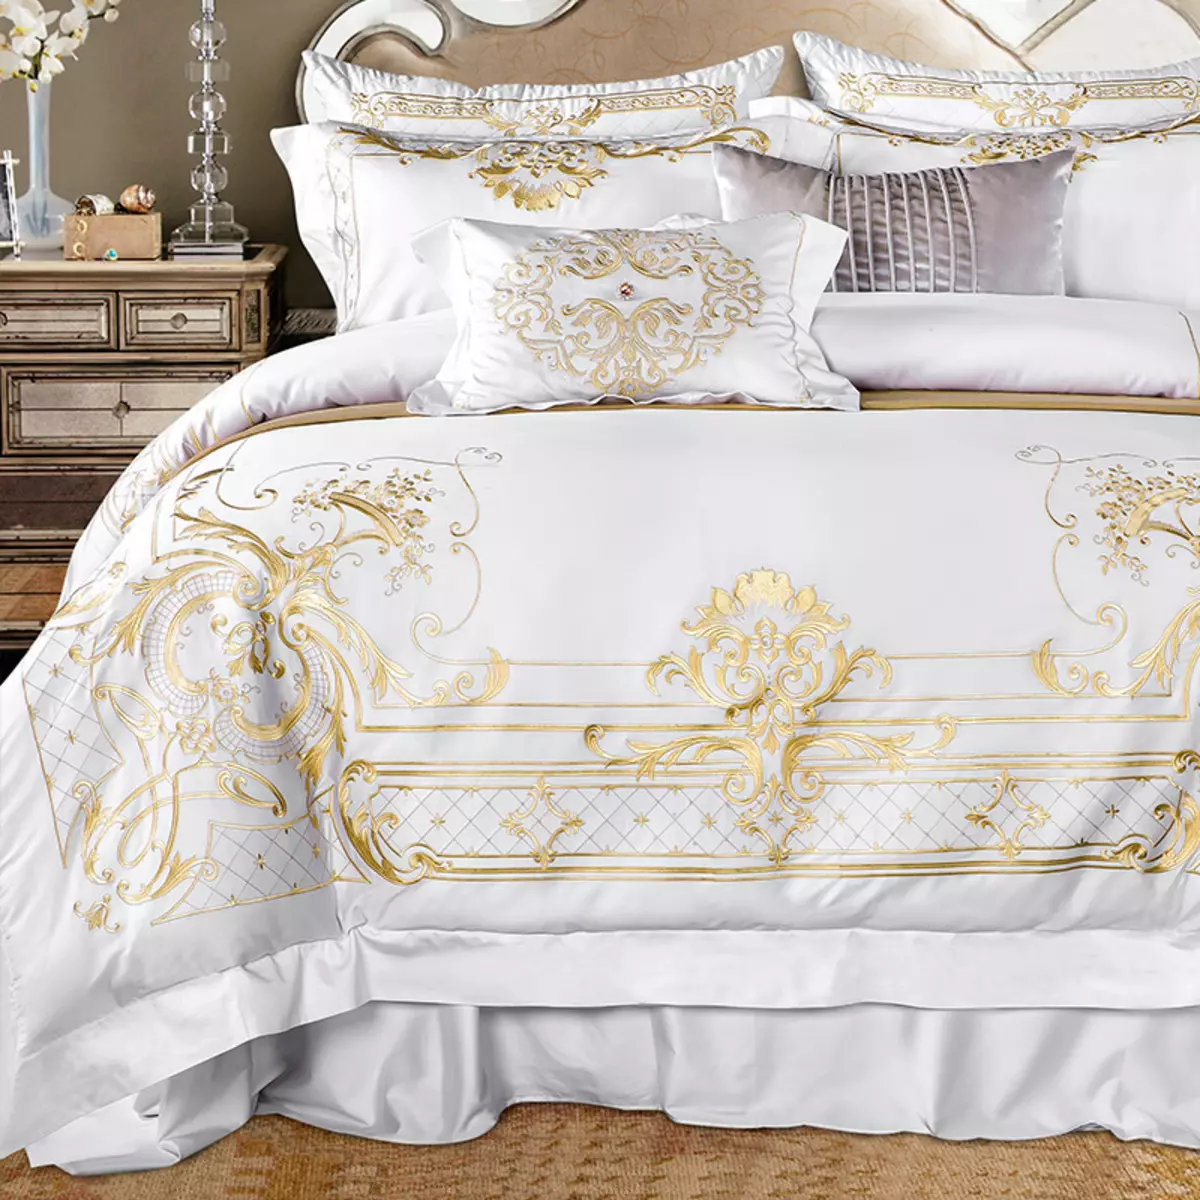 постельное белье на кровати белое